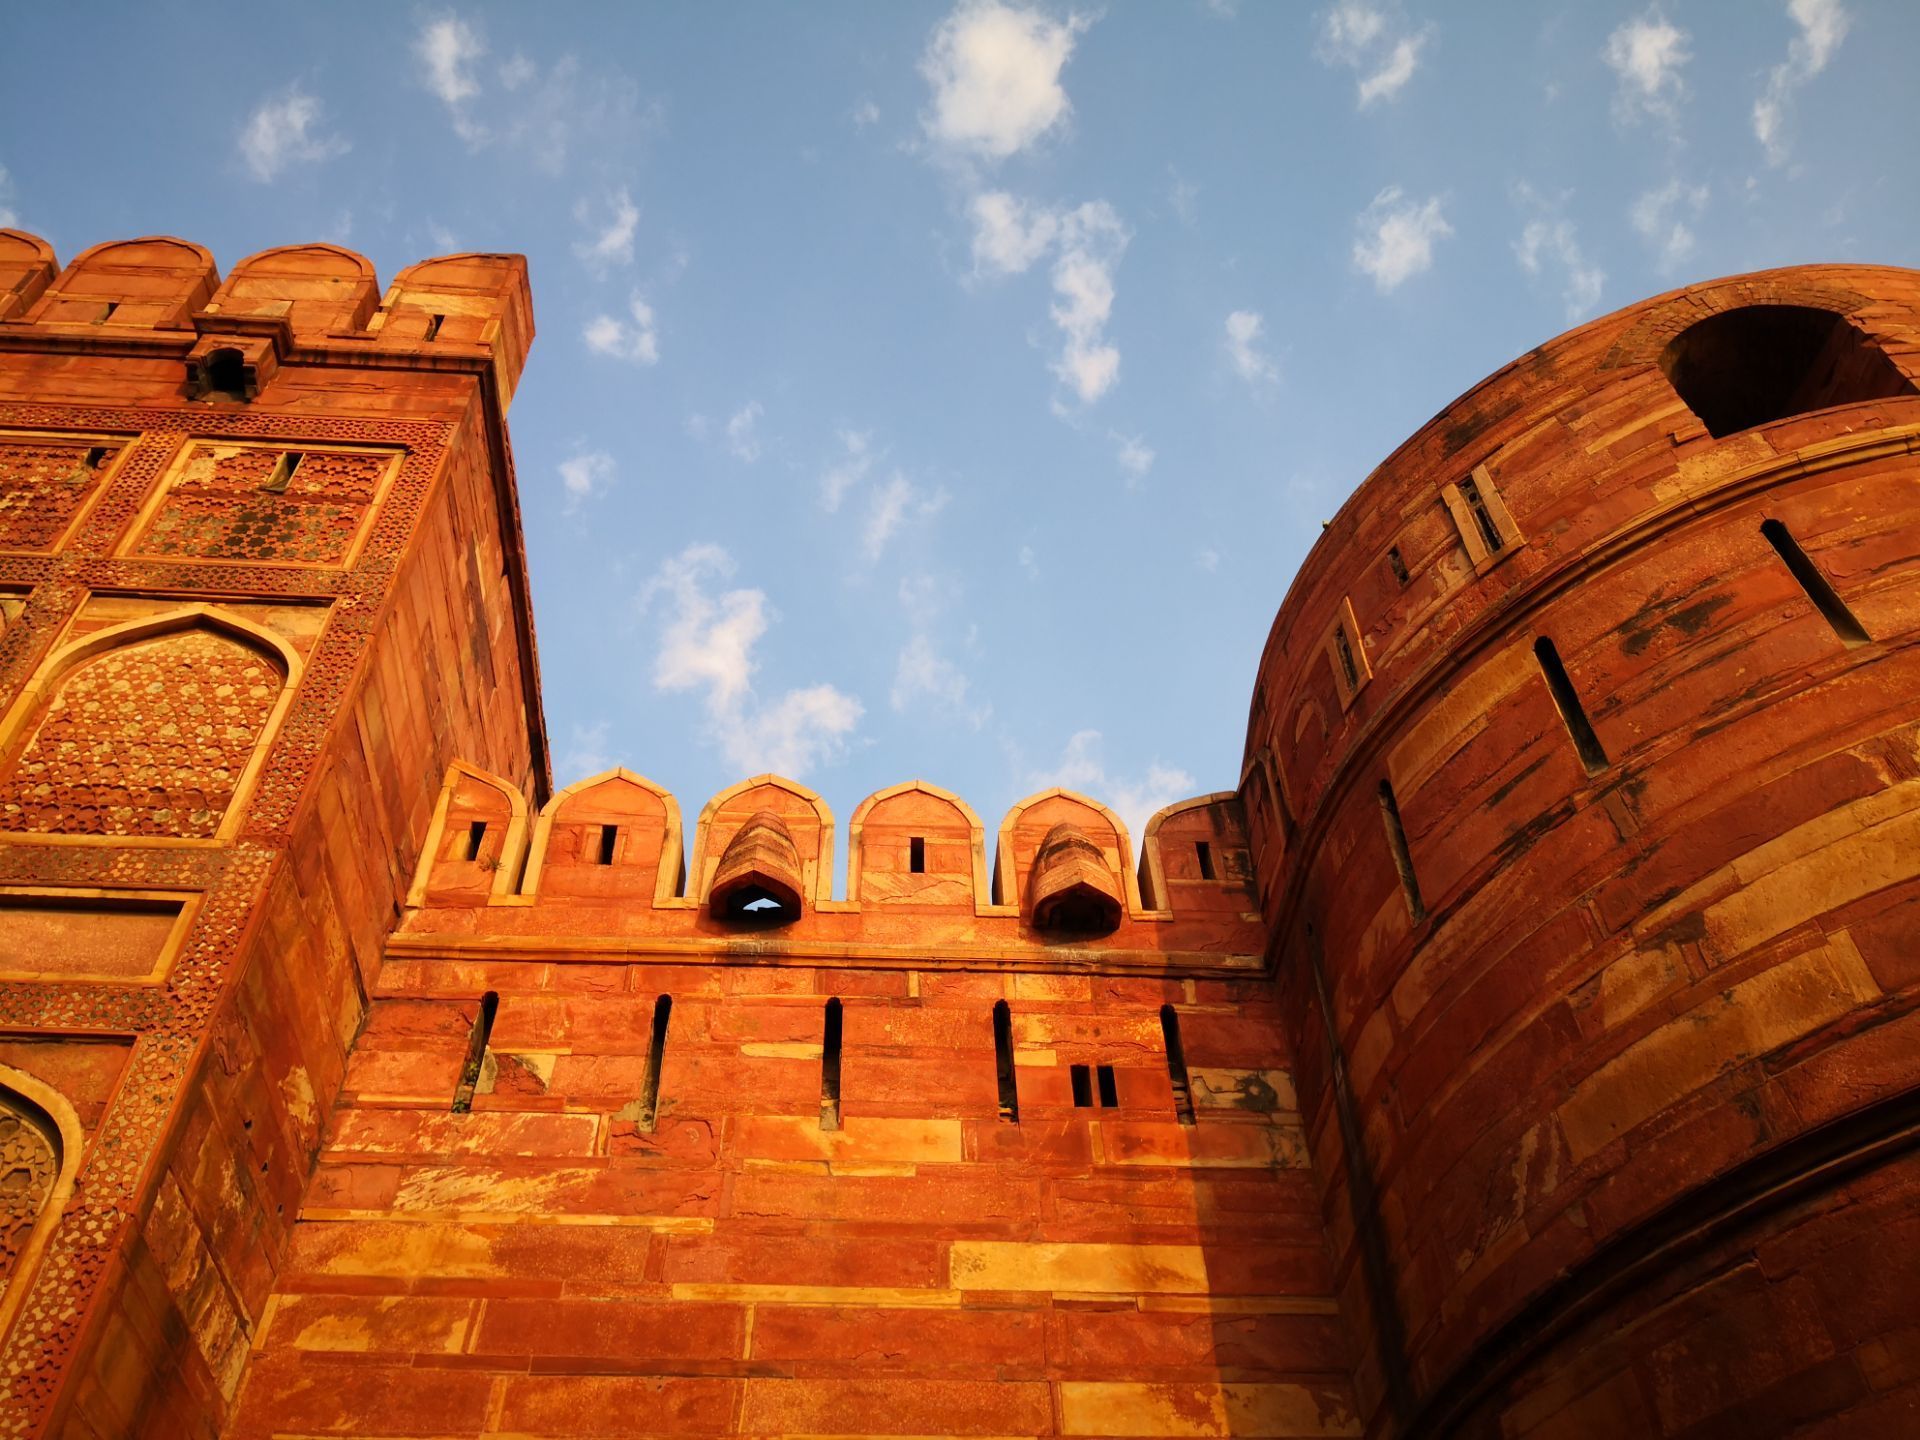 阿格拉古堡建筑是古代印度